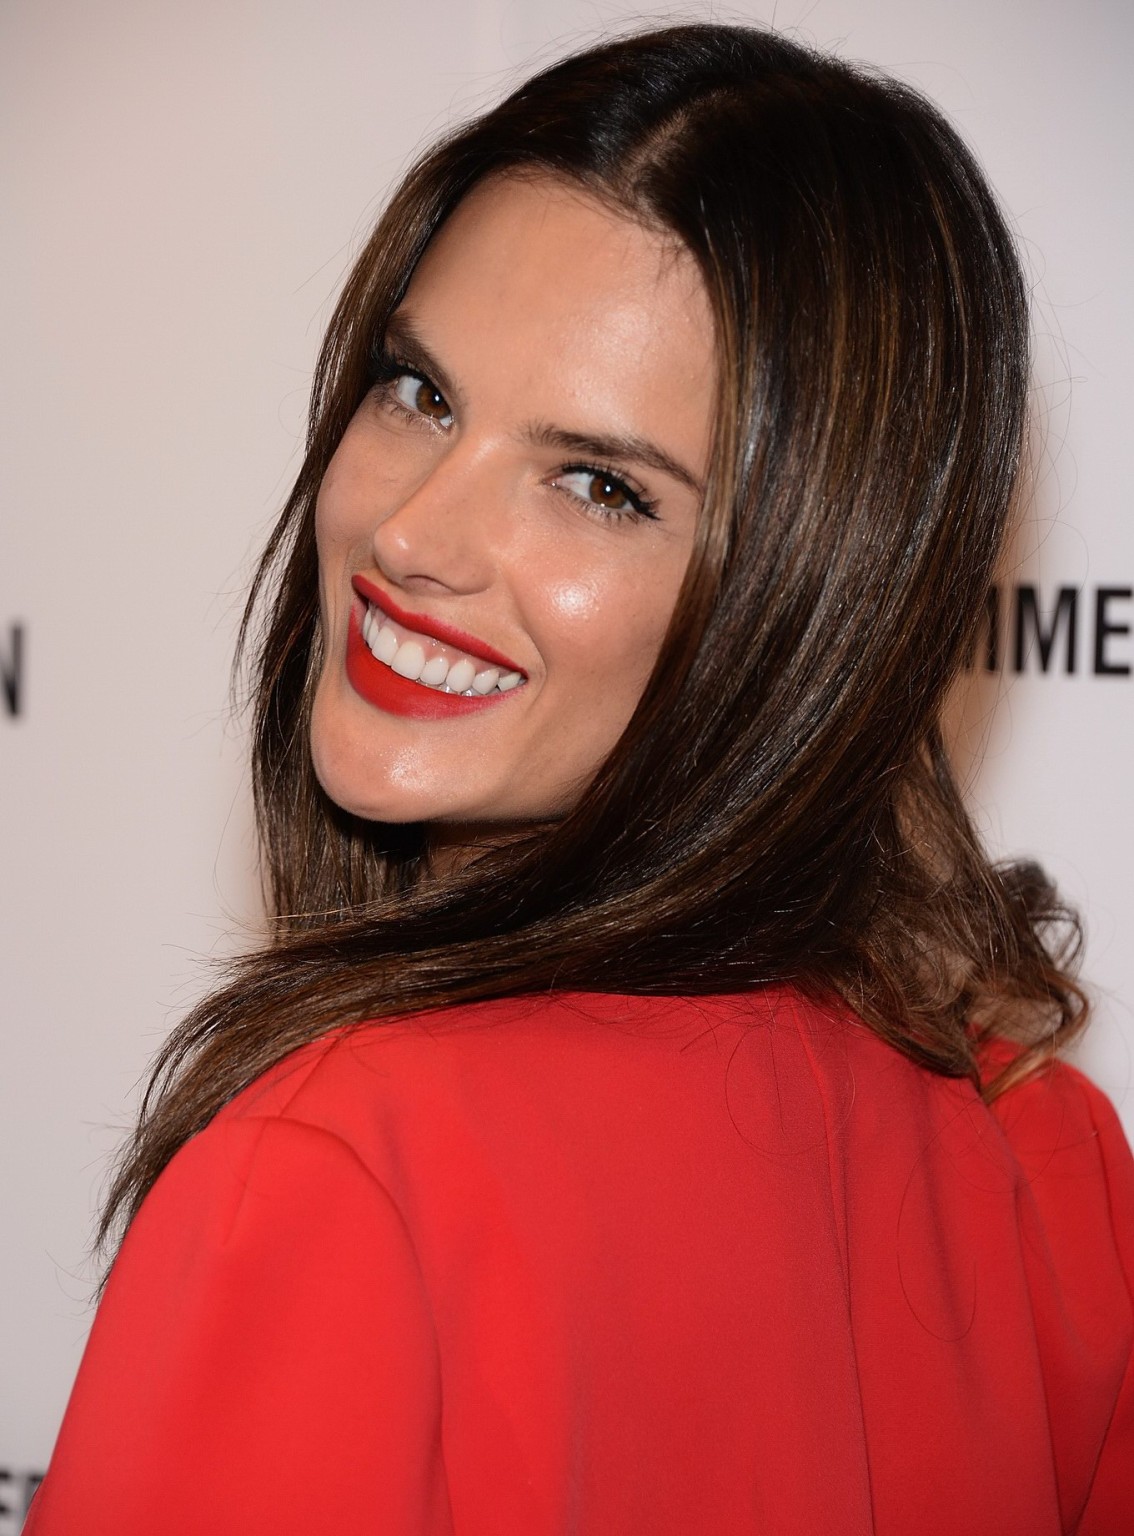 Alessandra ambrosio trägt ein rotes bauchfreies Top bei der schutz Sommer 2014 Kollektion
 #75199989